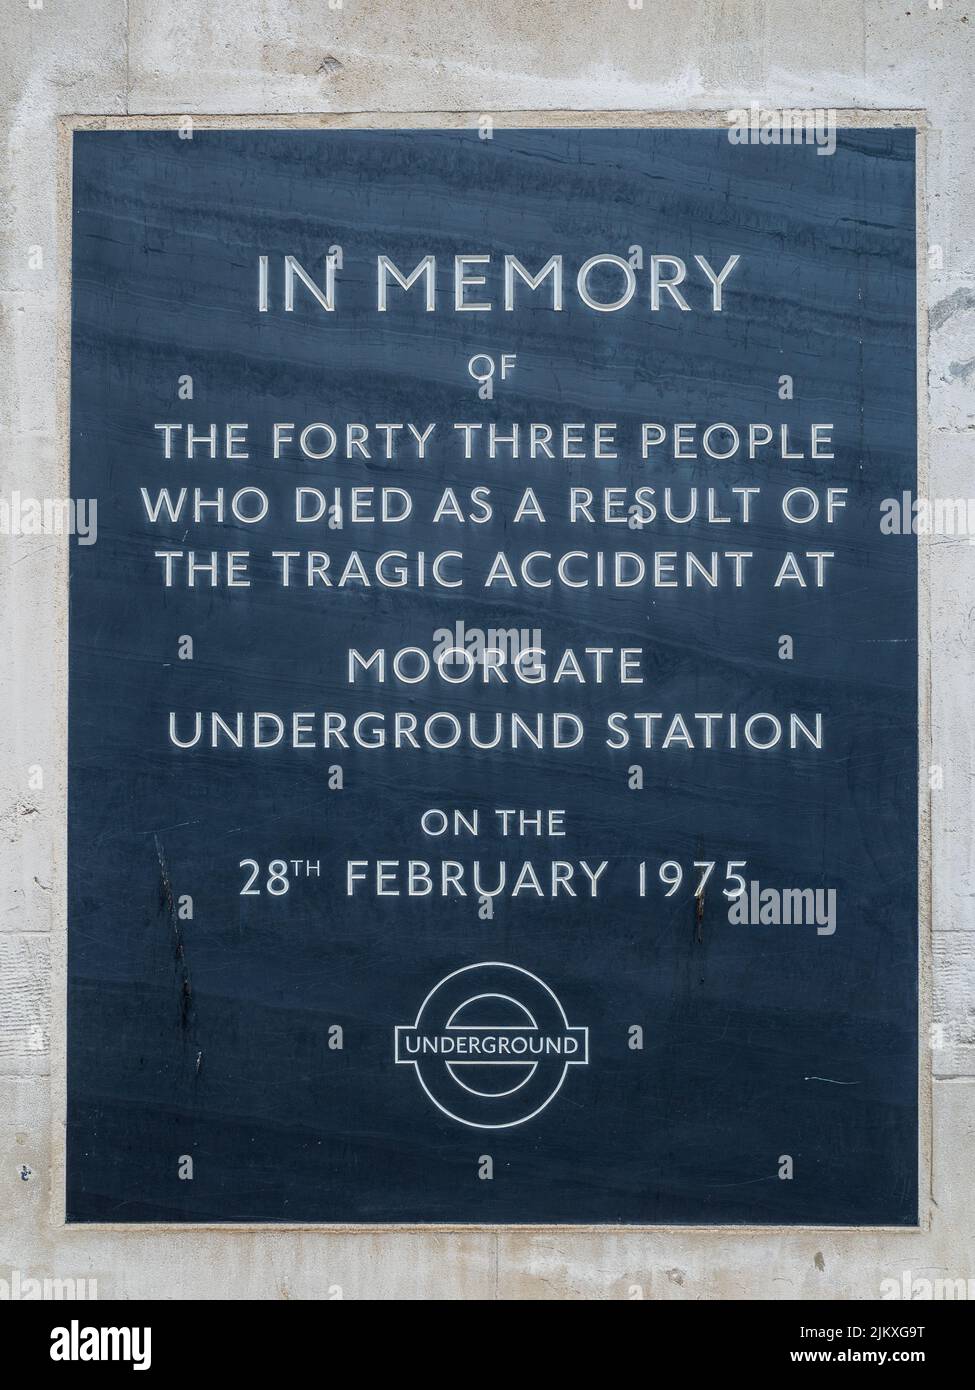 Plaque commémorative de la catastrophe du tube de Moorgate à l'extérieur de la station Moorgate de Londres. Mémorial de l'accident du métro de Moorgate. Mémorial de l'accident du train Moorgate. Banque D'Images